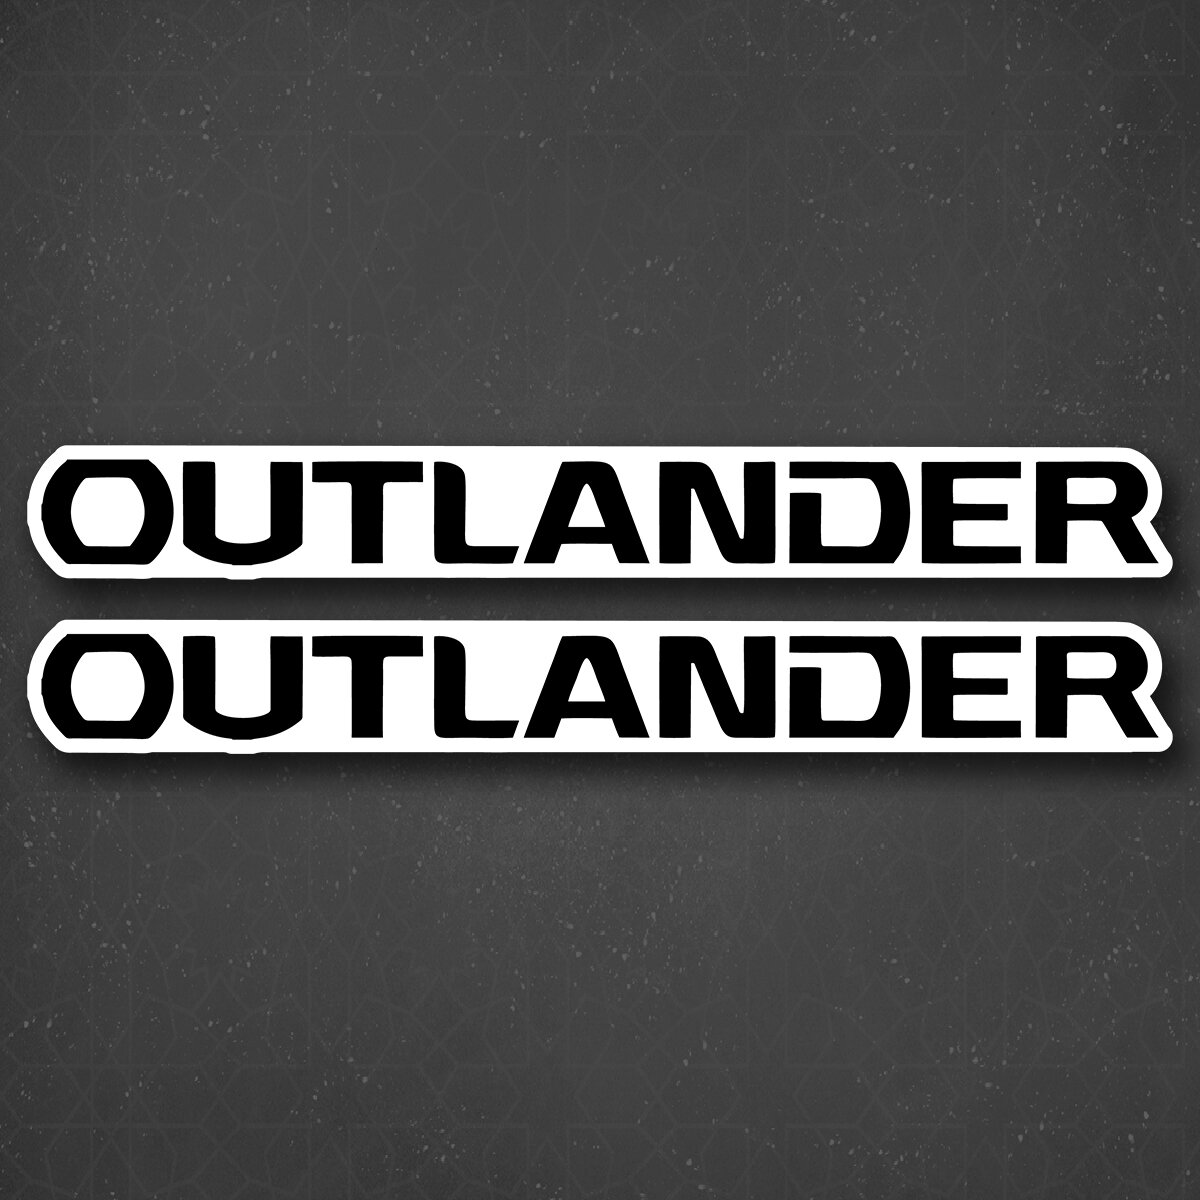 Наклейка на авто "Outlander - Аутлендер" 24x2 см